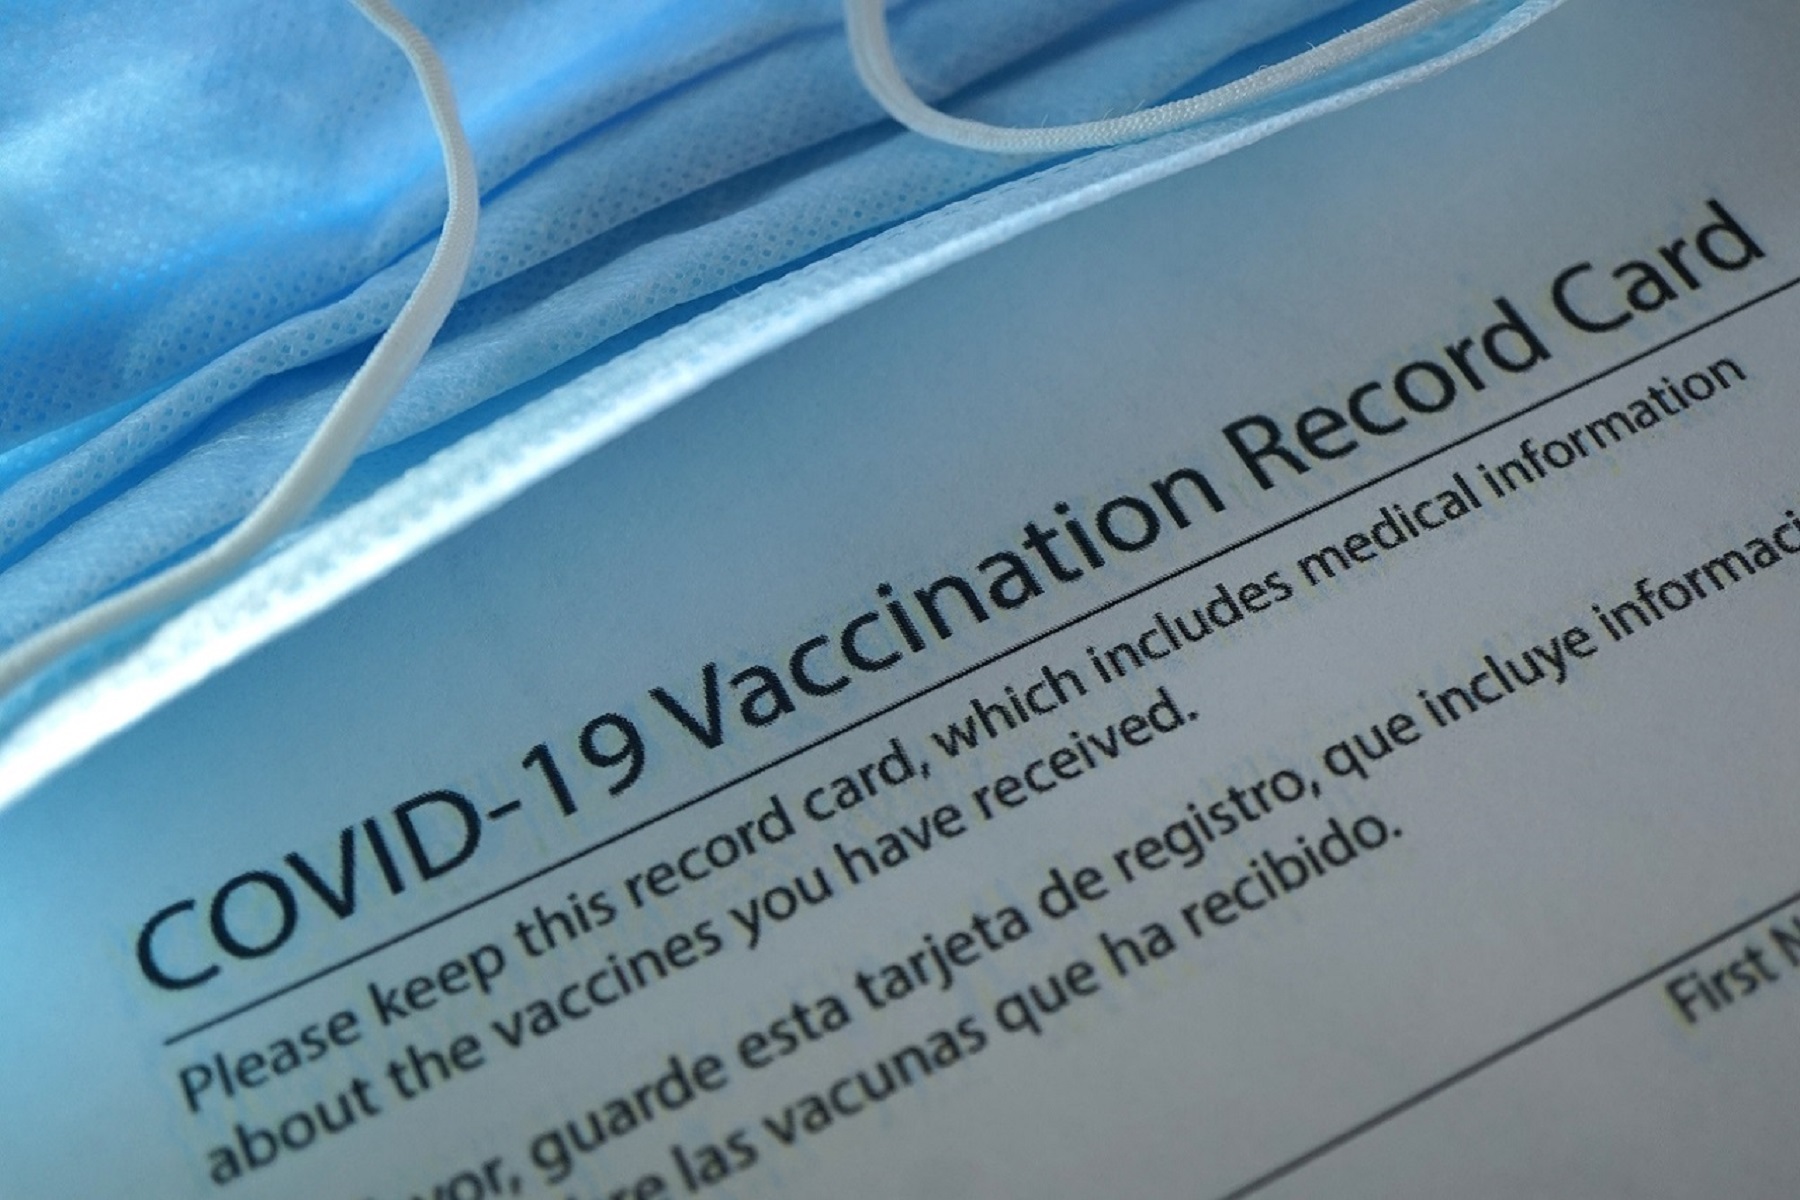 Κομητεία Λος Άντζελες: Θεωρεί ότι απαιτείται απόδειξη εμβολιασμού σε ορισμένους χώρους